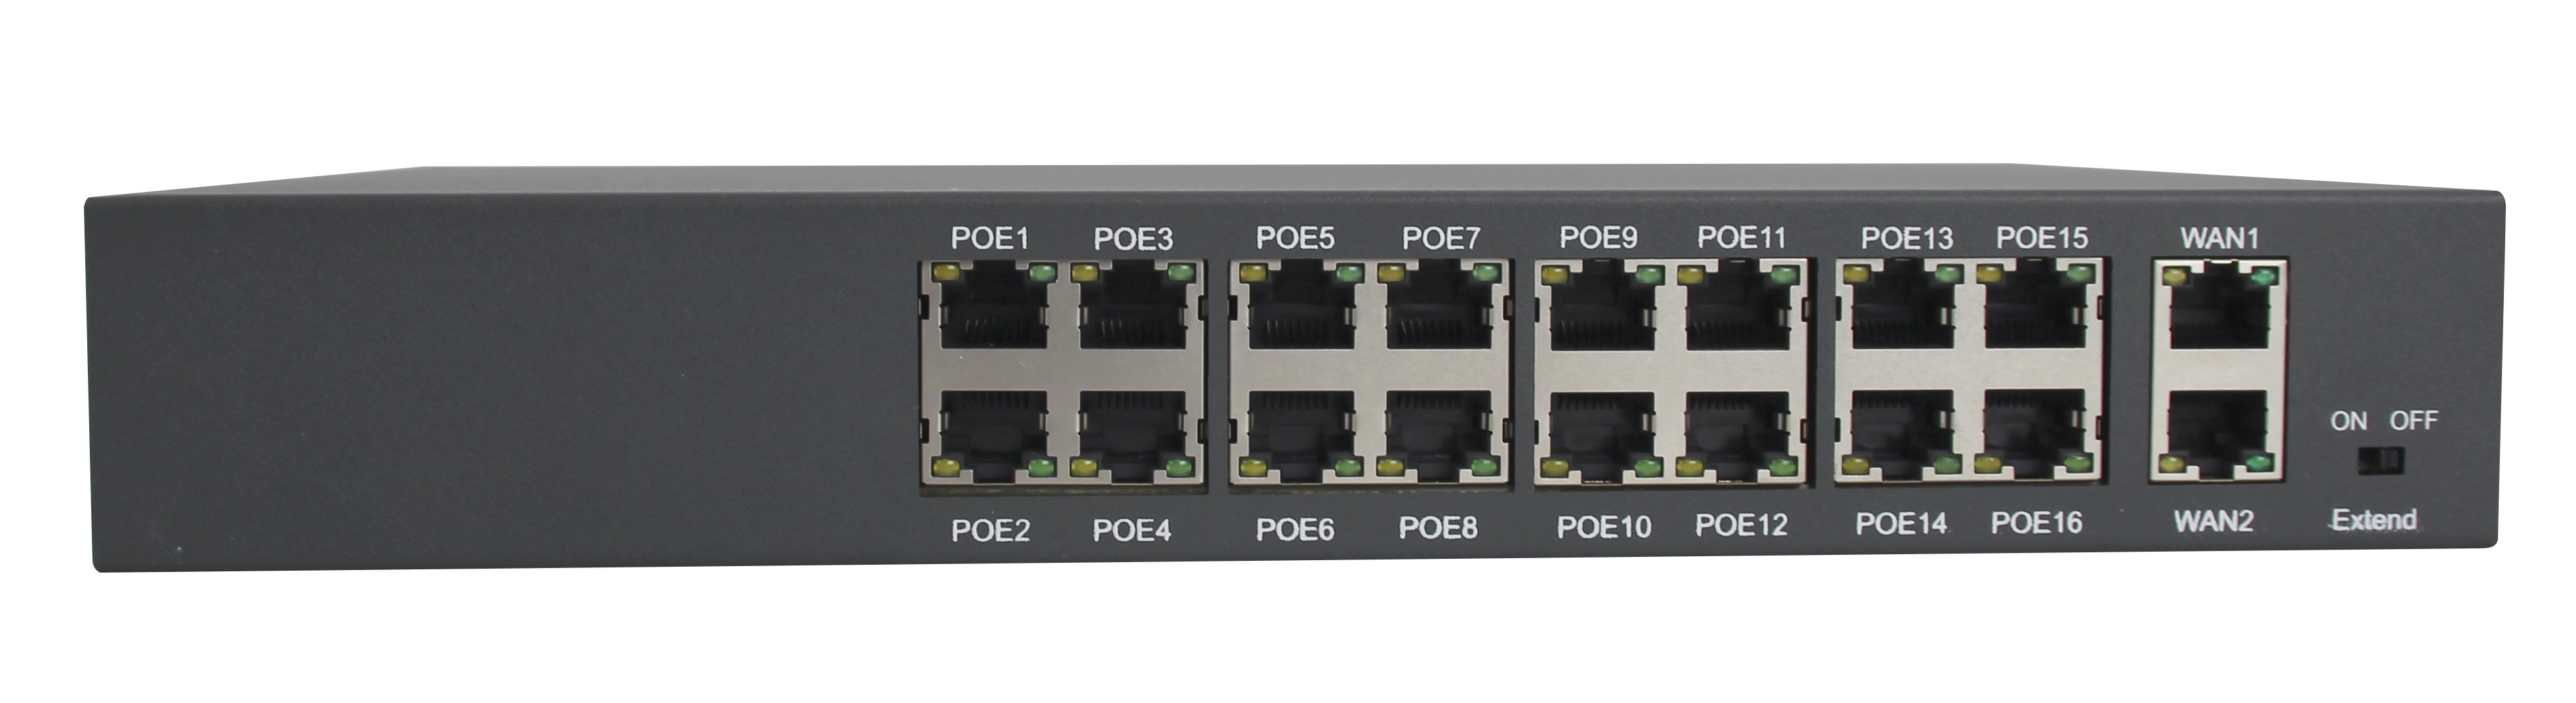 AI-PS-HT1612 Šestnáctiportový 10/100 Mbps PoE switch s 2x gigabitovým uplinkem